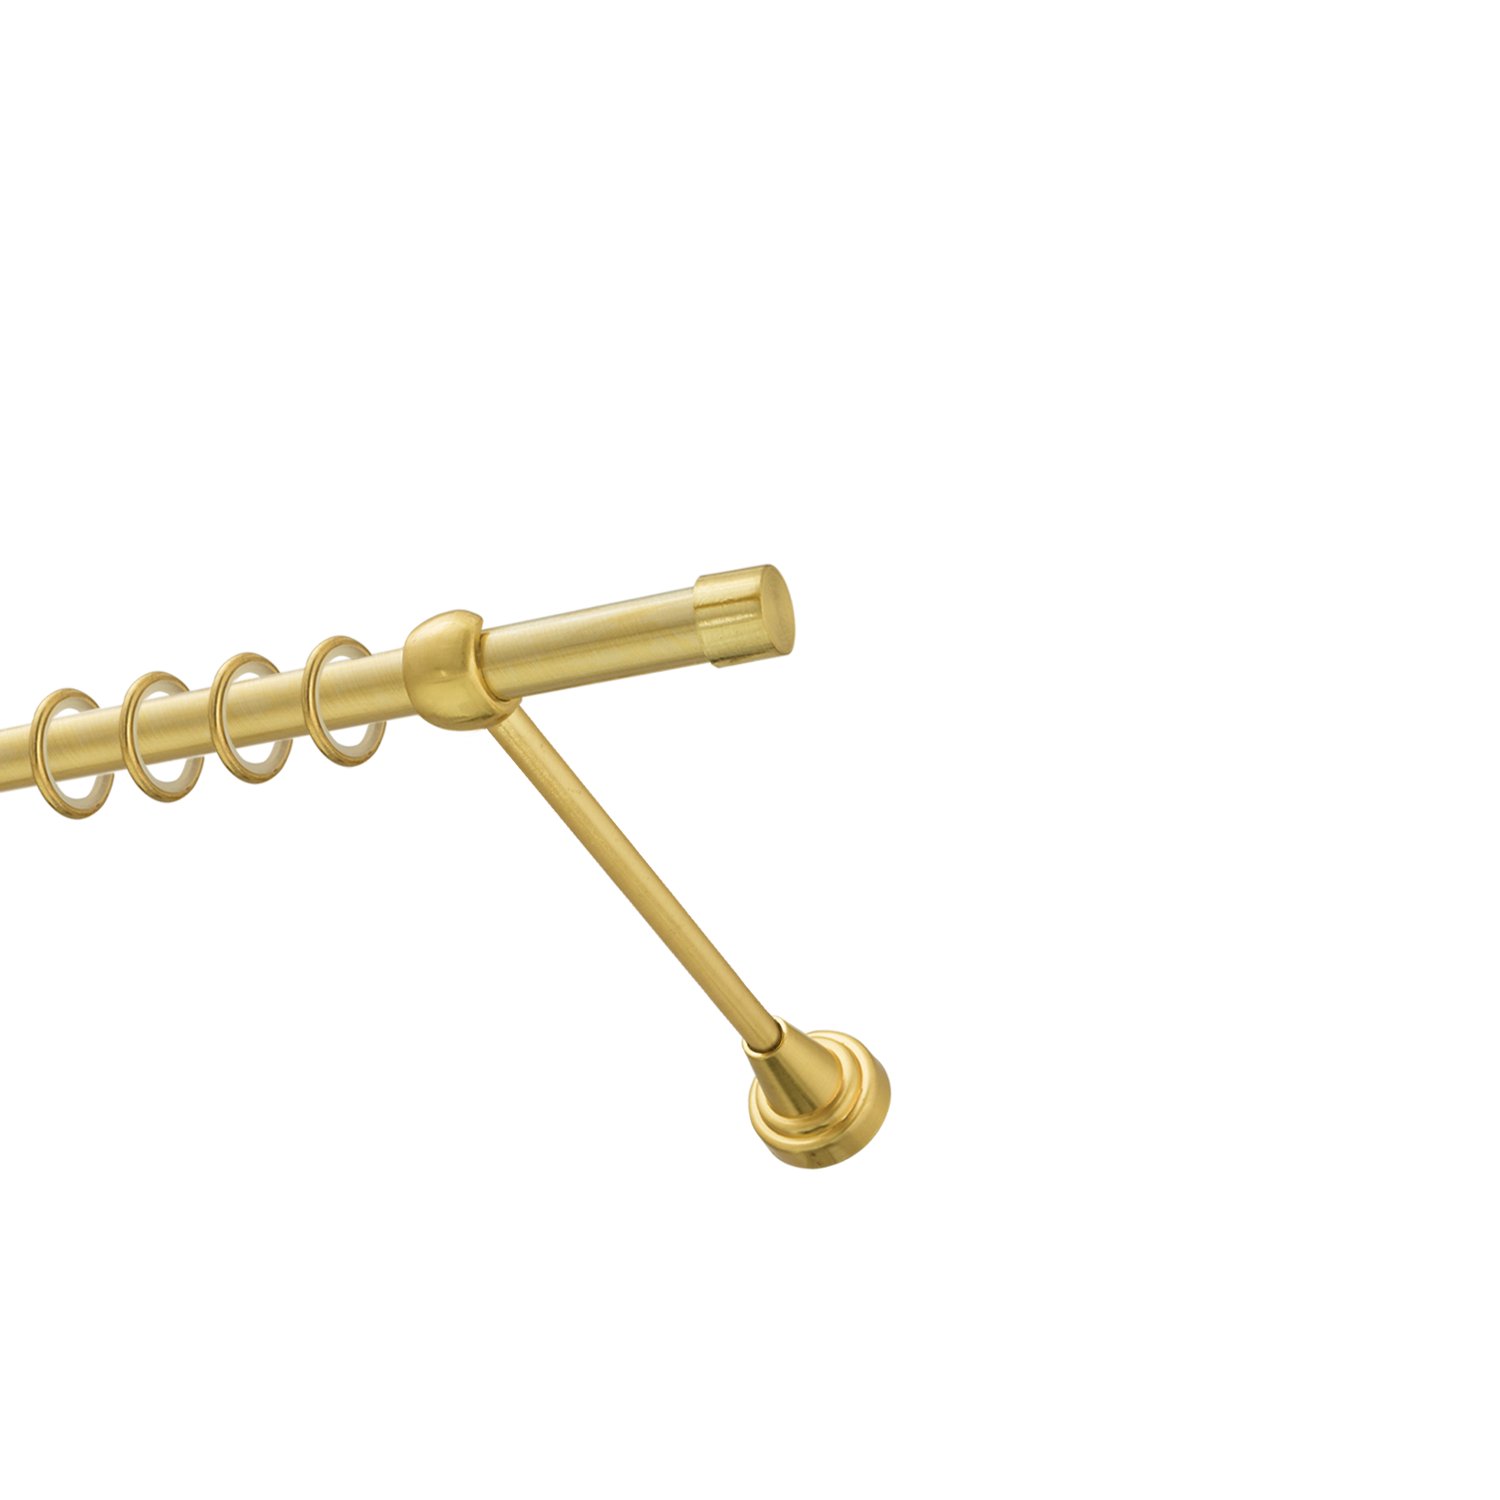 Металлический карниз для штор Заглушка, однорядный 16 мм, золото, гладкая штанга, длина 160 см - фото Wikidecor.ru